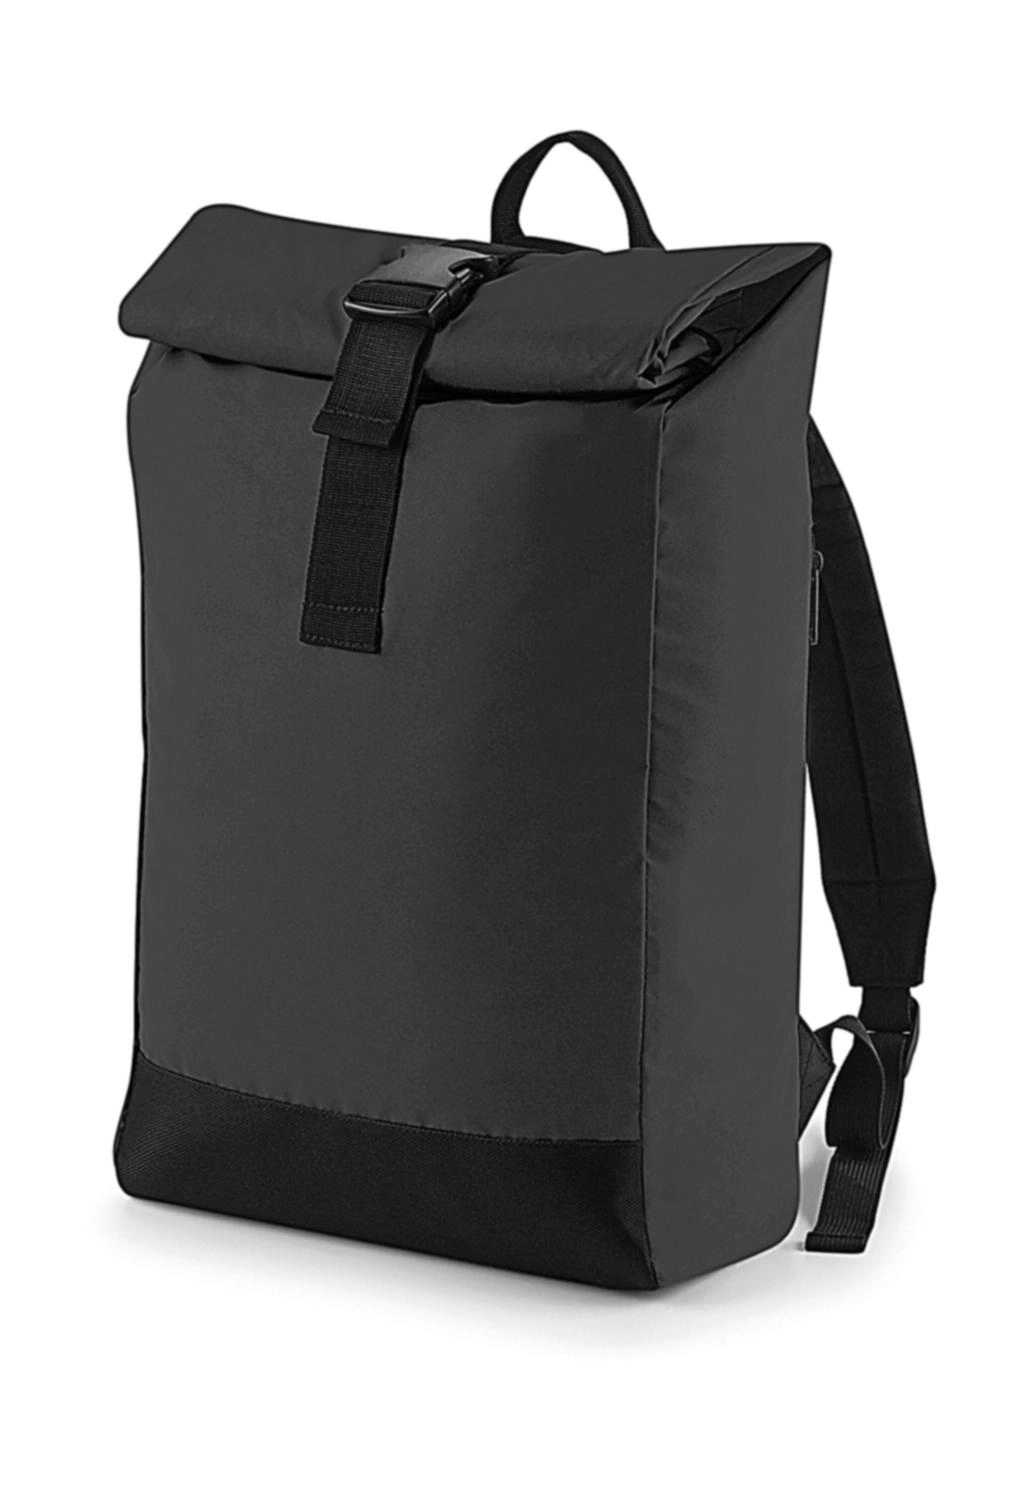 Reflective Roll-Top Backpack zum Besticken und Bedrucken in der Farbe Black Reflective mit Ihren Logo, Schriftzug oder Motiv.